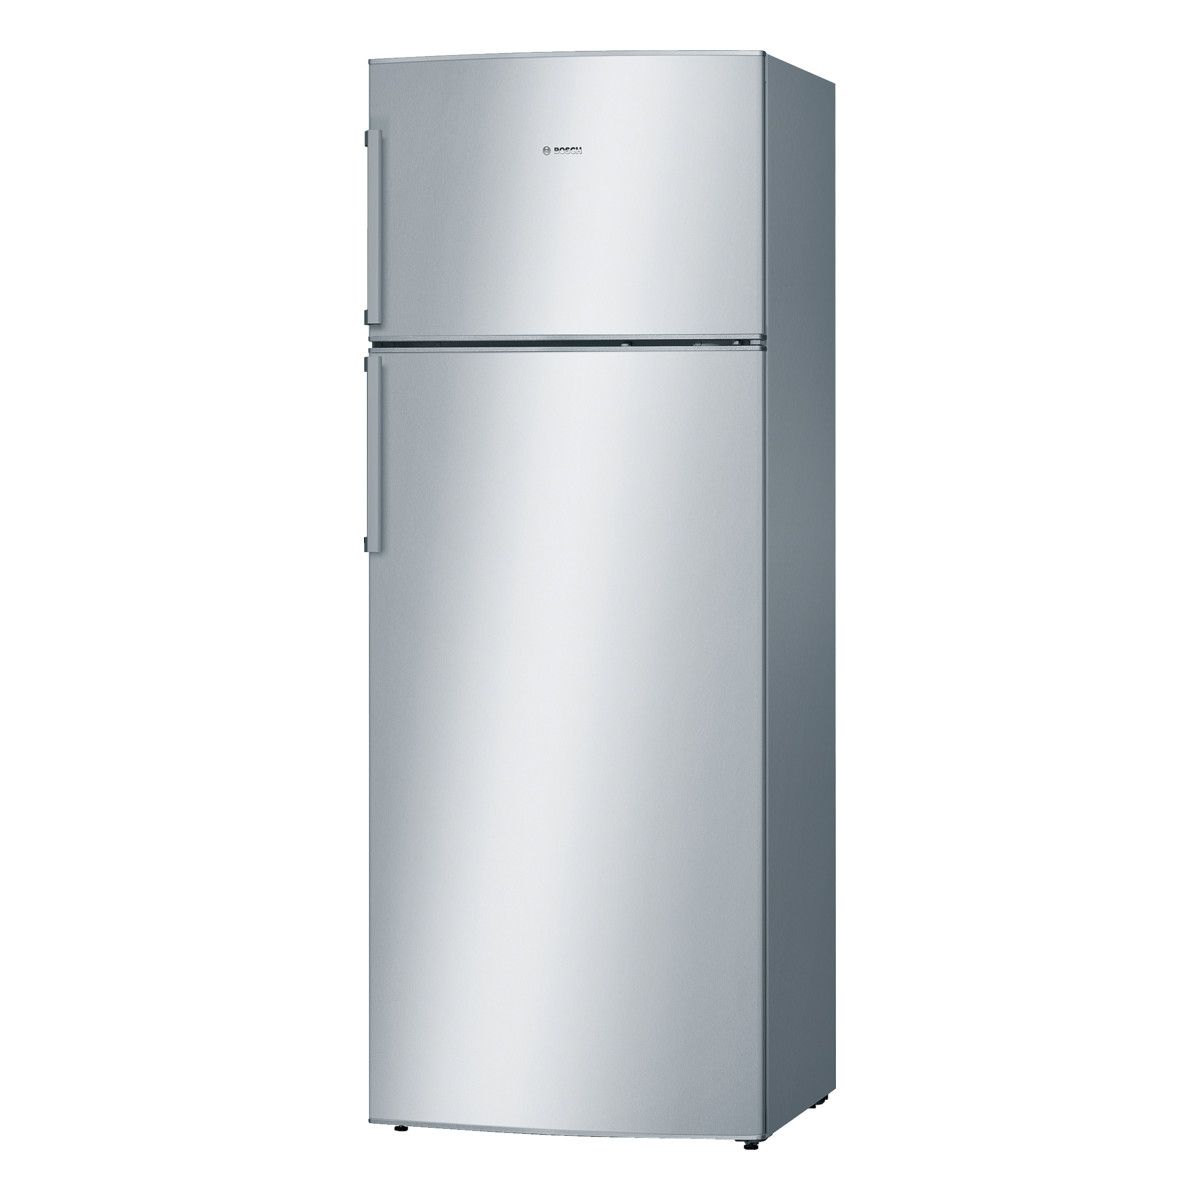 Холодильники no frost купить в москве. Bosch kgn86ai30u. Bosch kgn55vl20u. Холодильник Bosch kgn86ai30u. Холодильник бош двухкамерный ноу Фрост.